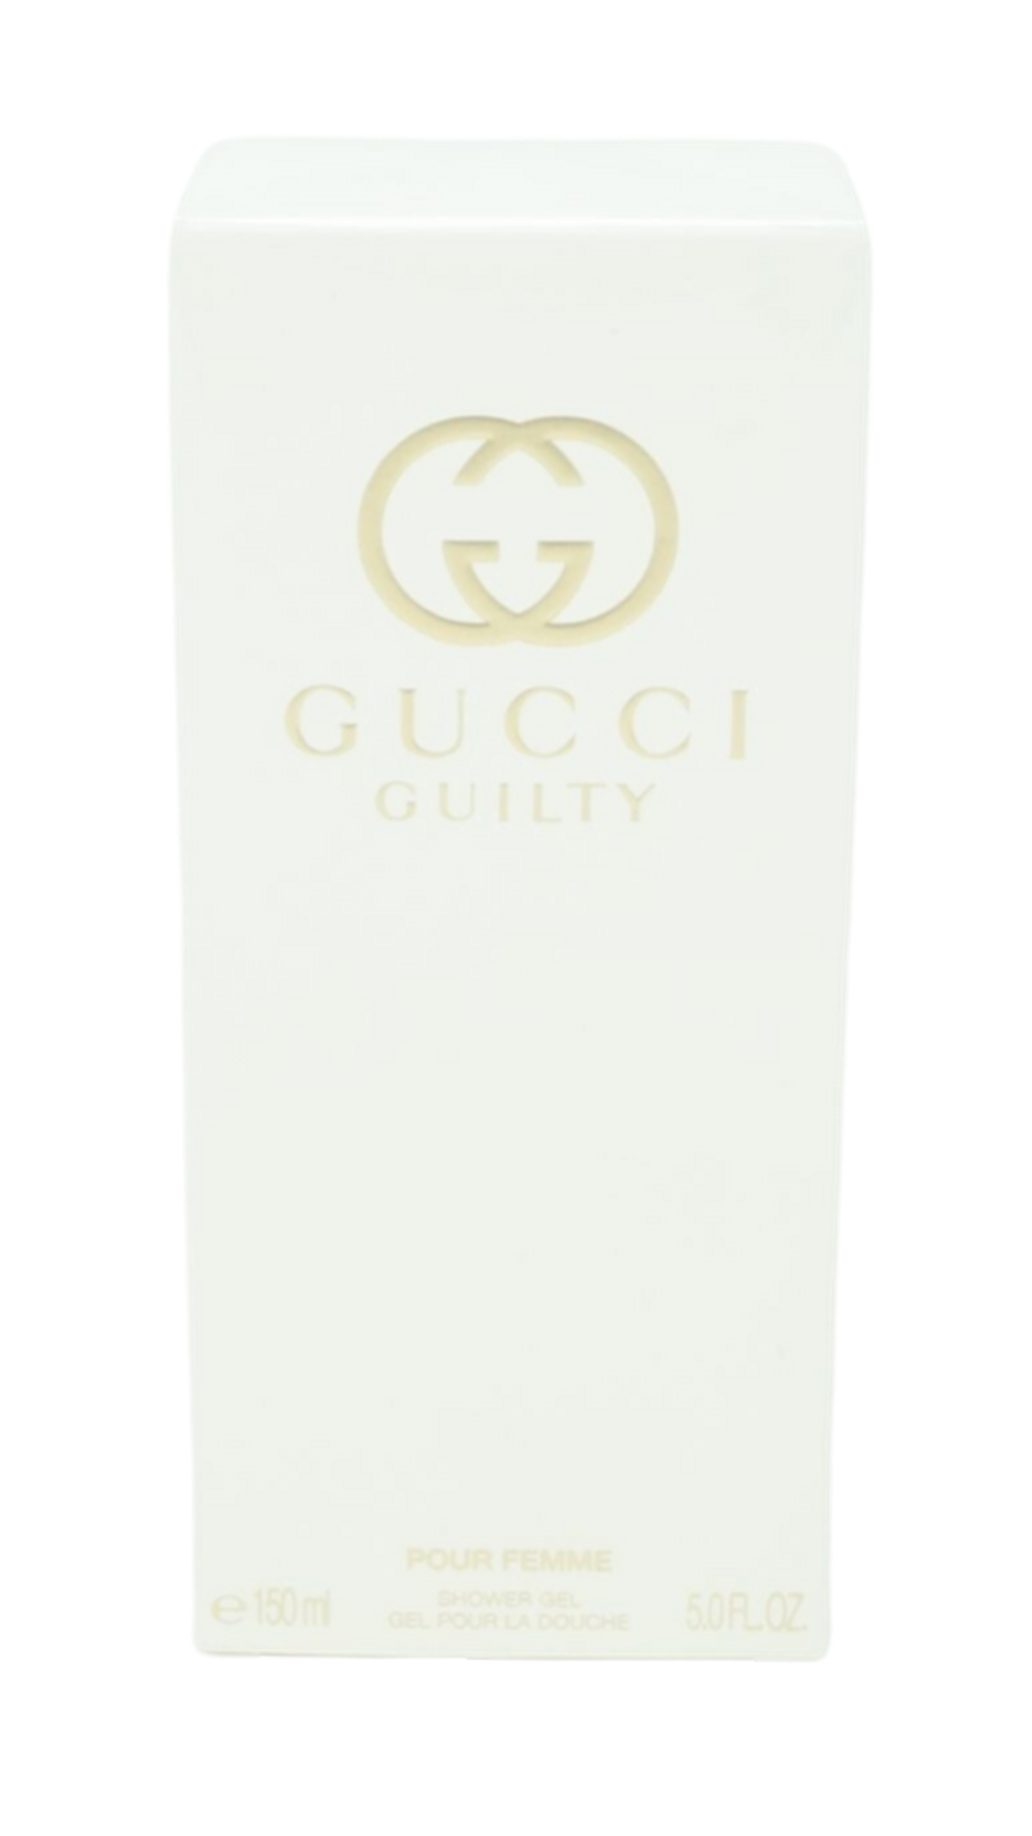 GUCCI Shower Guilty Duschgel Gel 150ml Gucci Femme